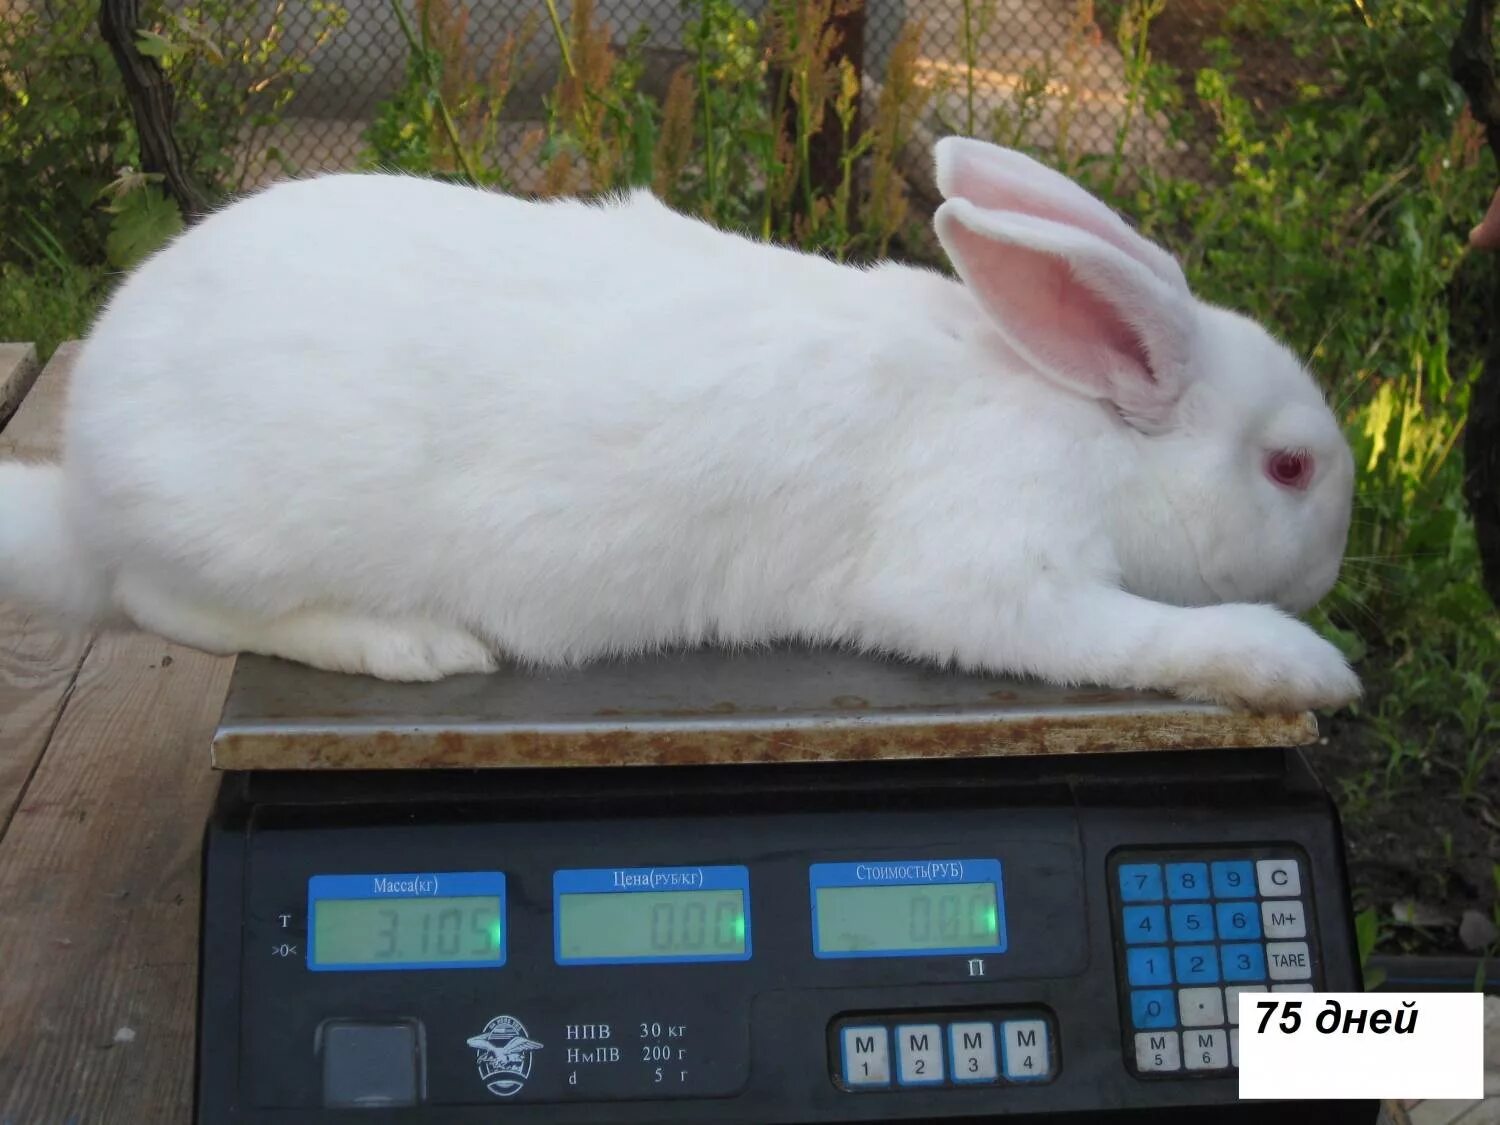 Вес порода кроликов. Белый Паннон кролик вес. Порода кроликов белый Паннон. Калифорнийский великан кролик. Кролик белый великан вес.